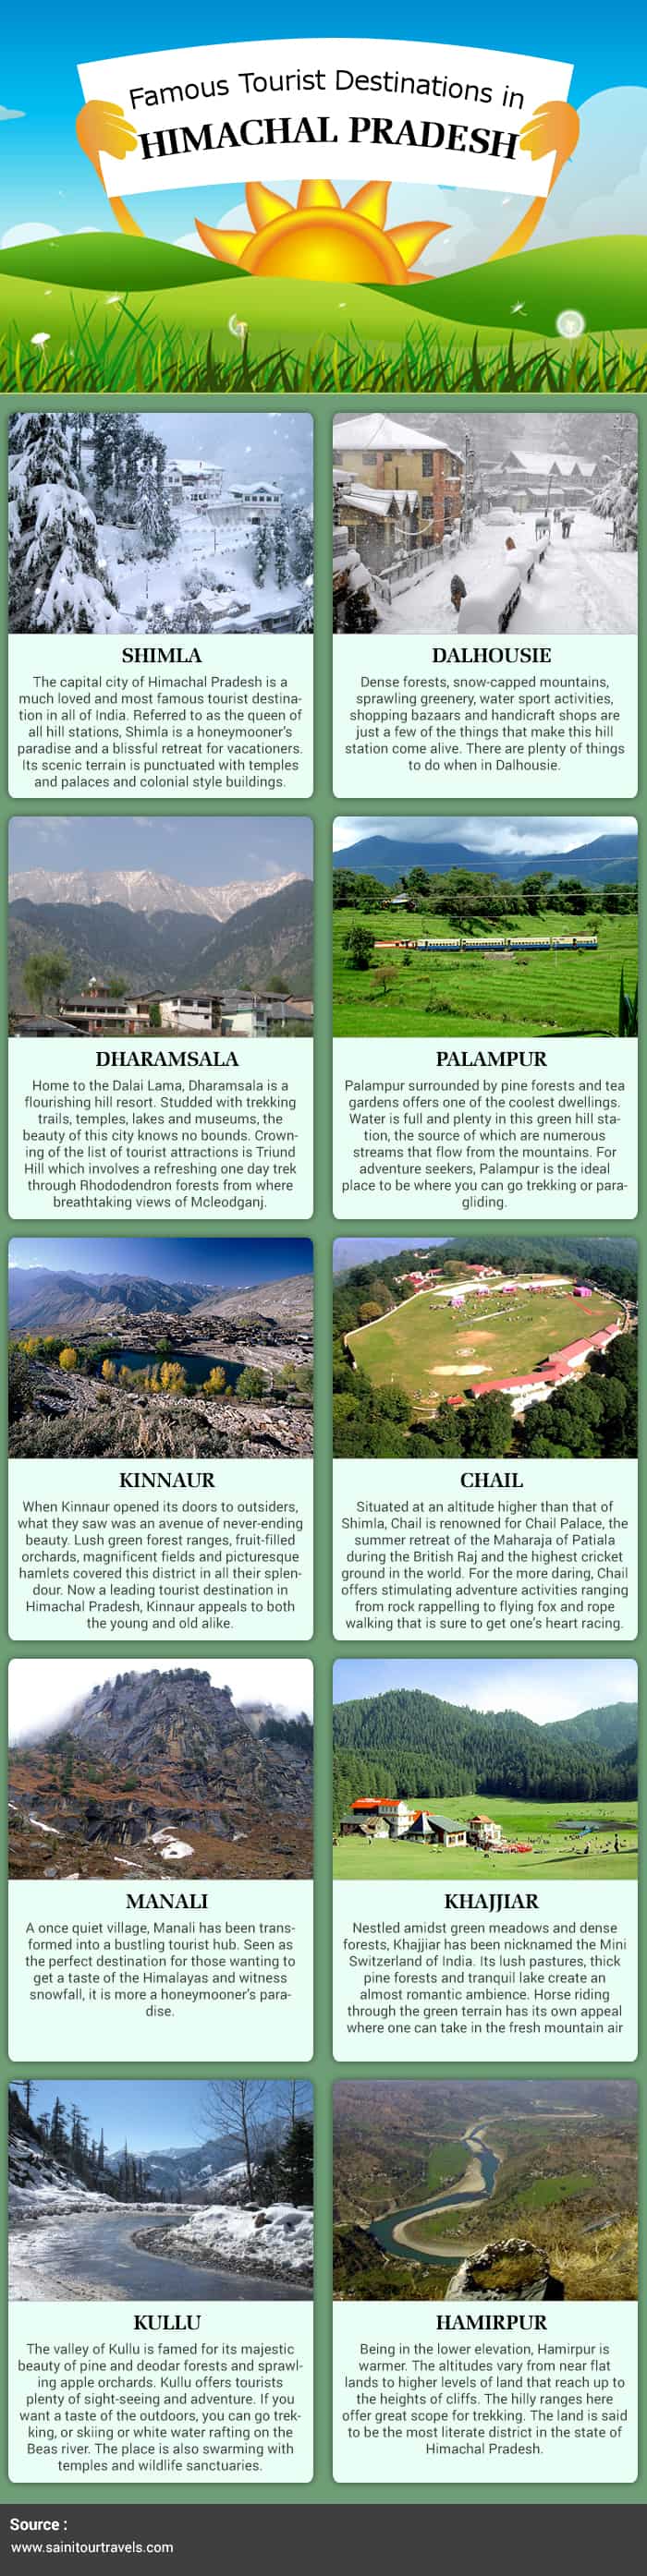 Famous Tourist Destinations in Himachal Pradesh